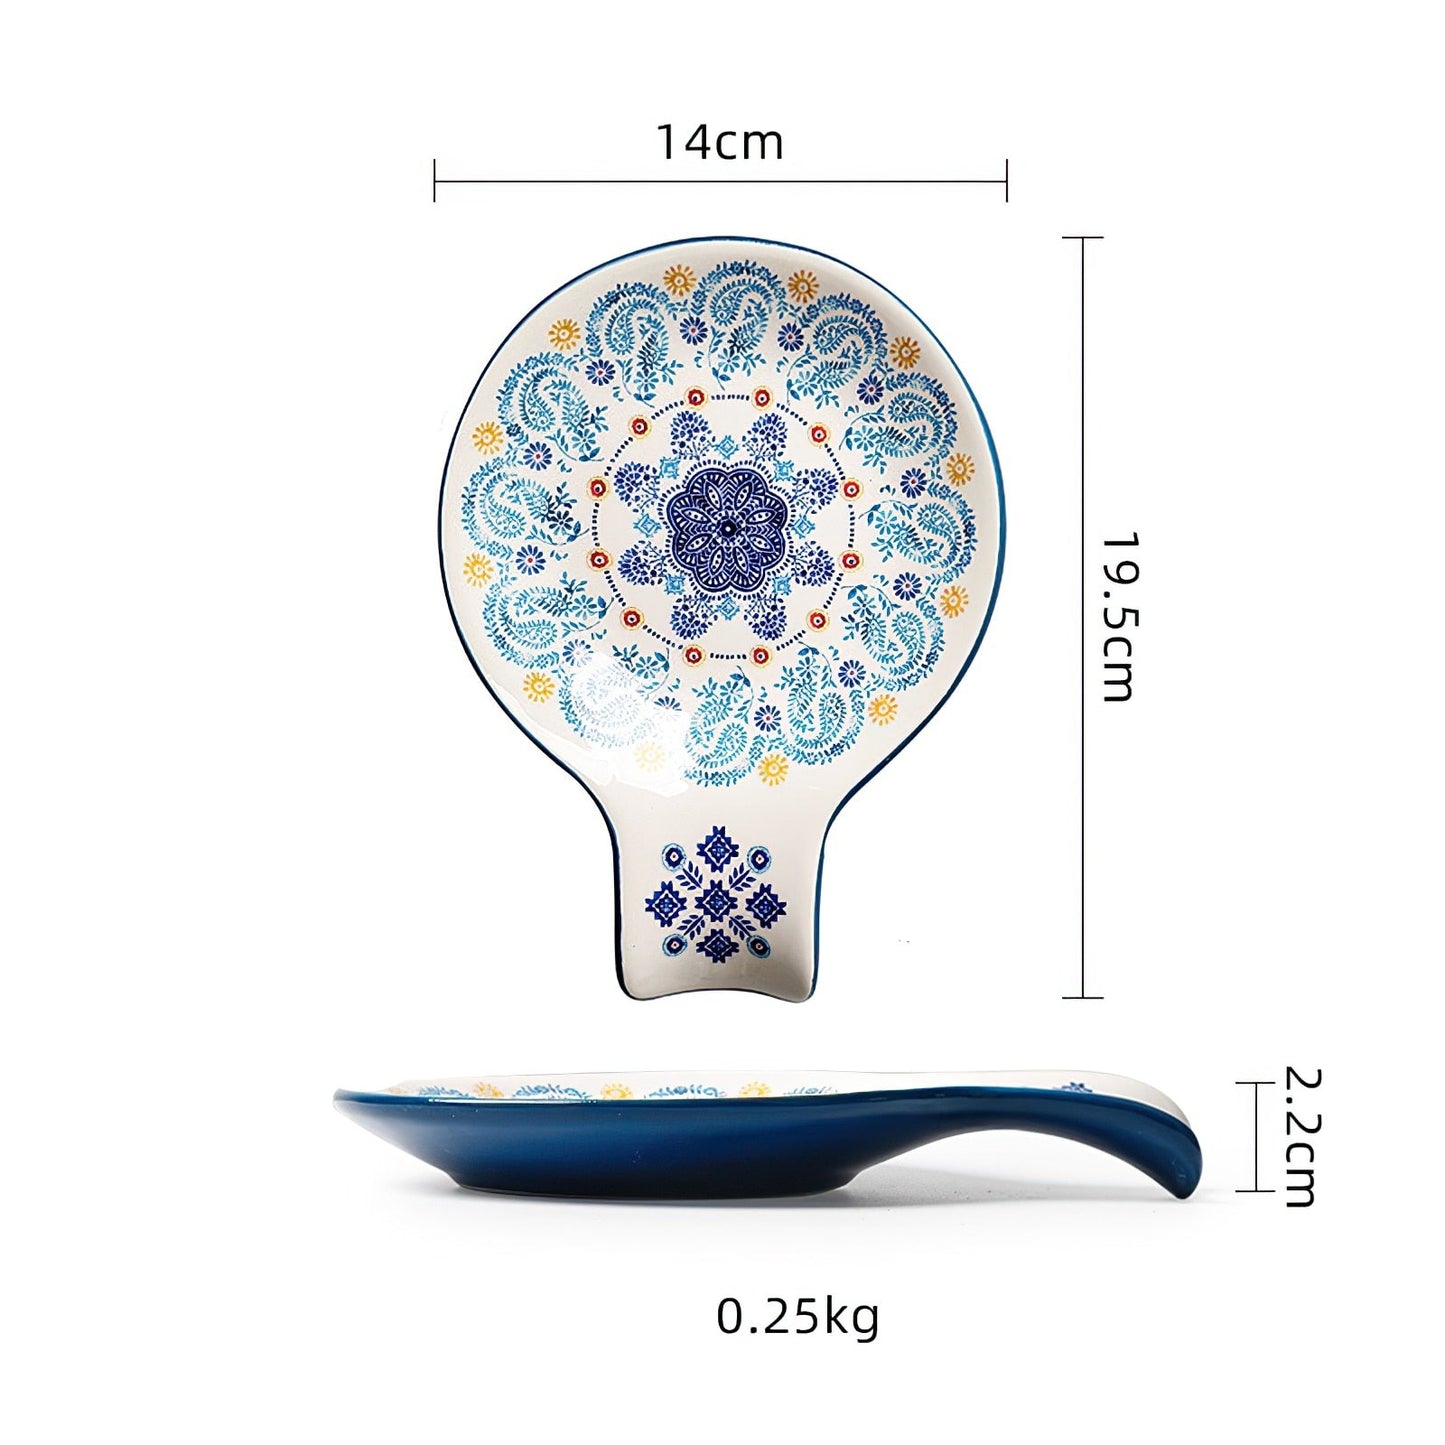 Blue Oaxaca Dinner Tableware